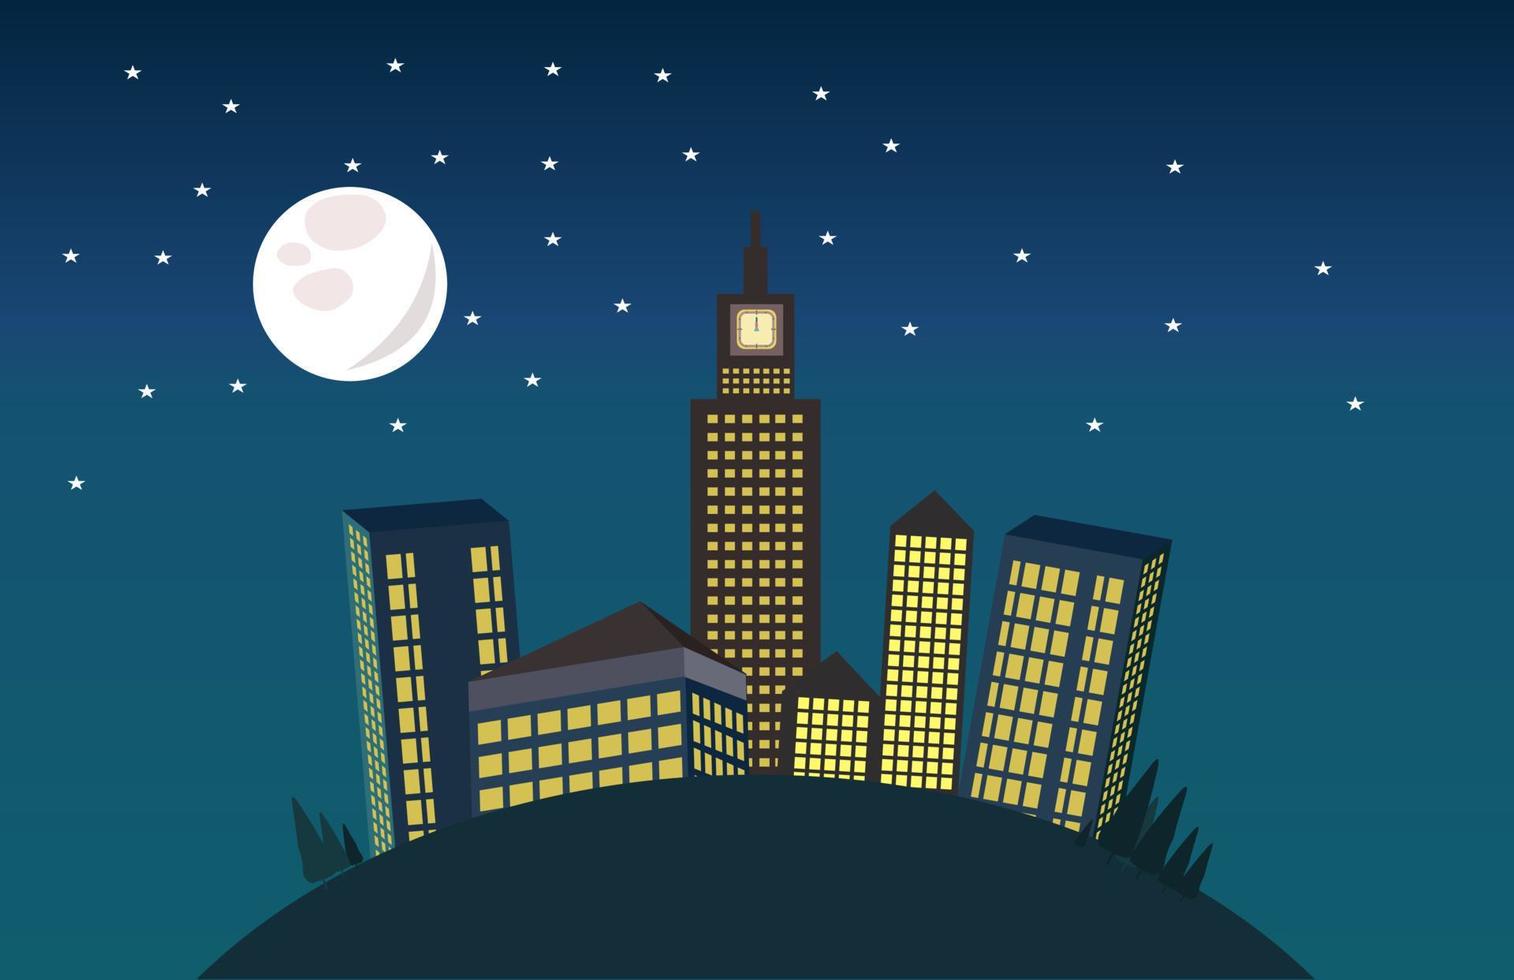 Halloween-thema bouwen, uitzicht op het stadsgebouw 's nachts met de maan, sterren en bomen vector